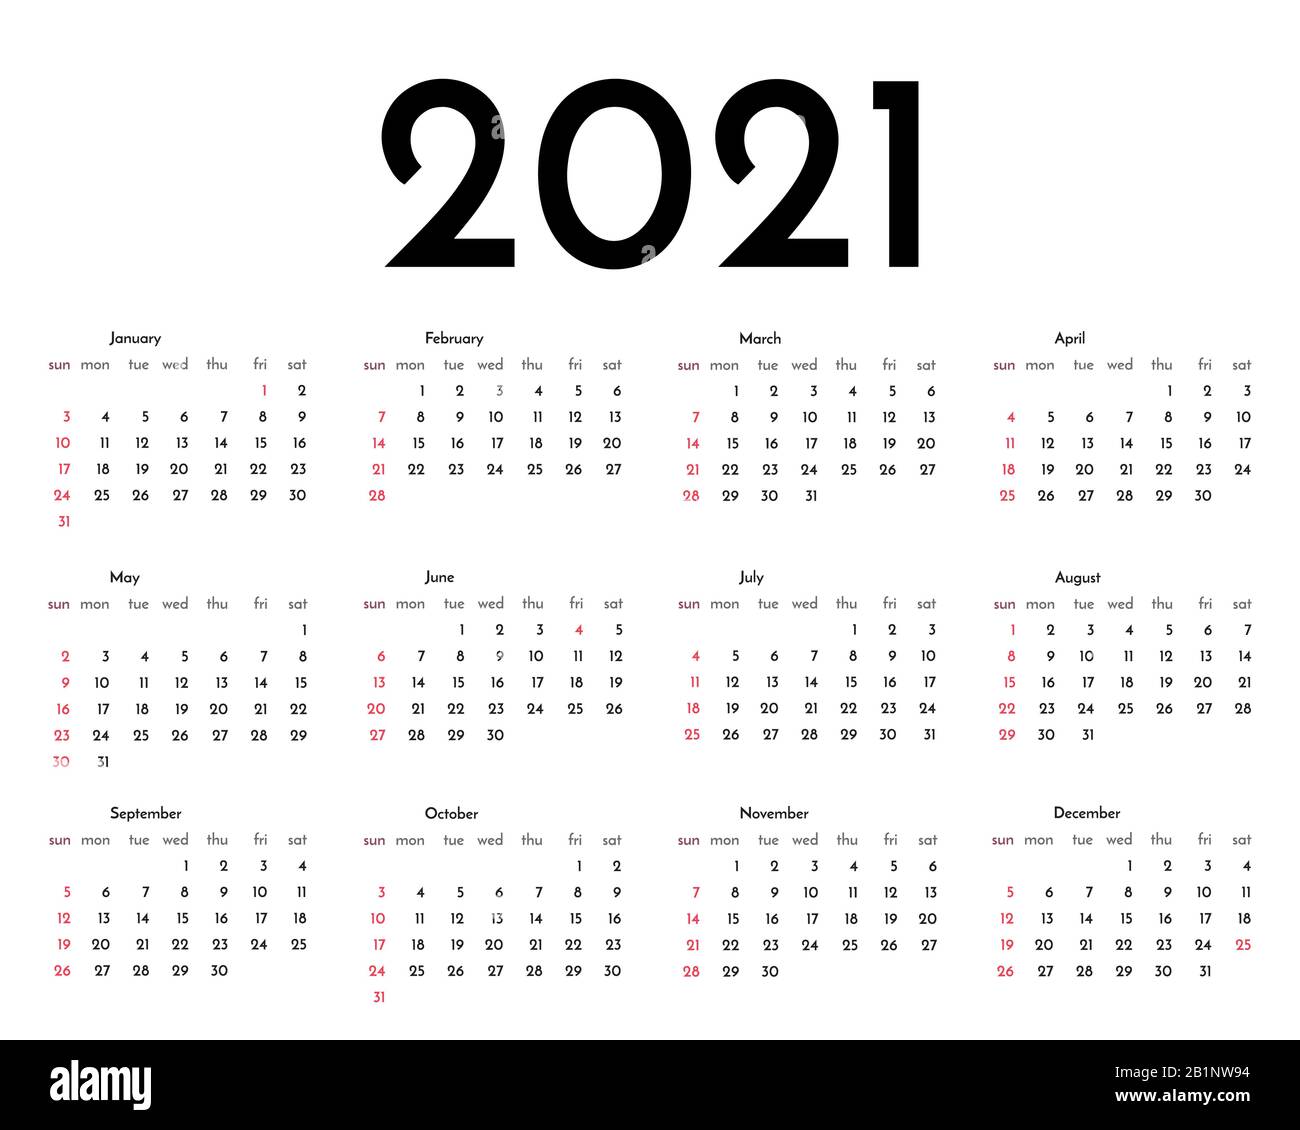 Calendar 2021 Bryn Mawr Academic Calendar 2021 2022